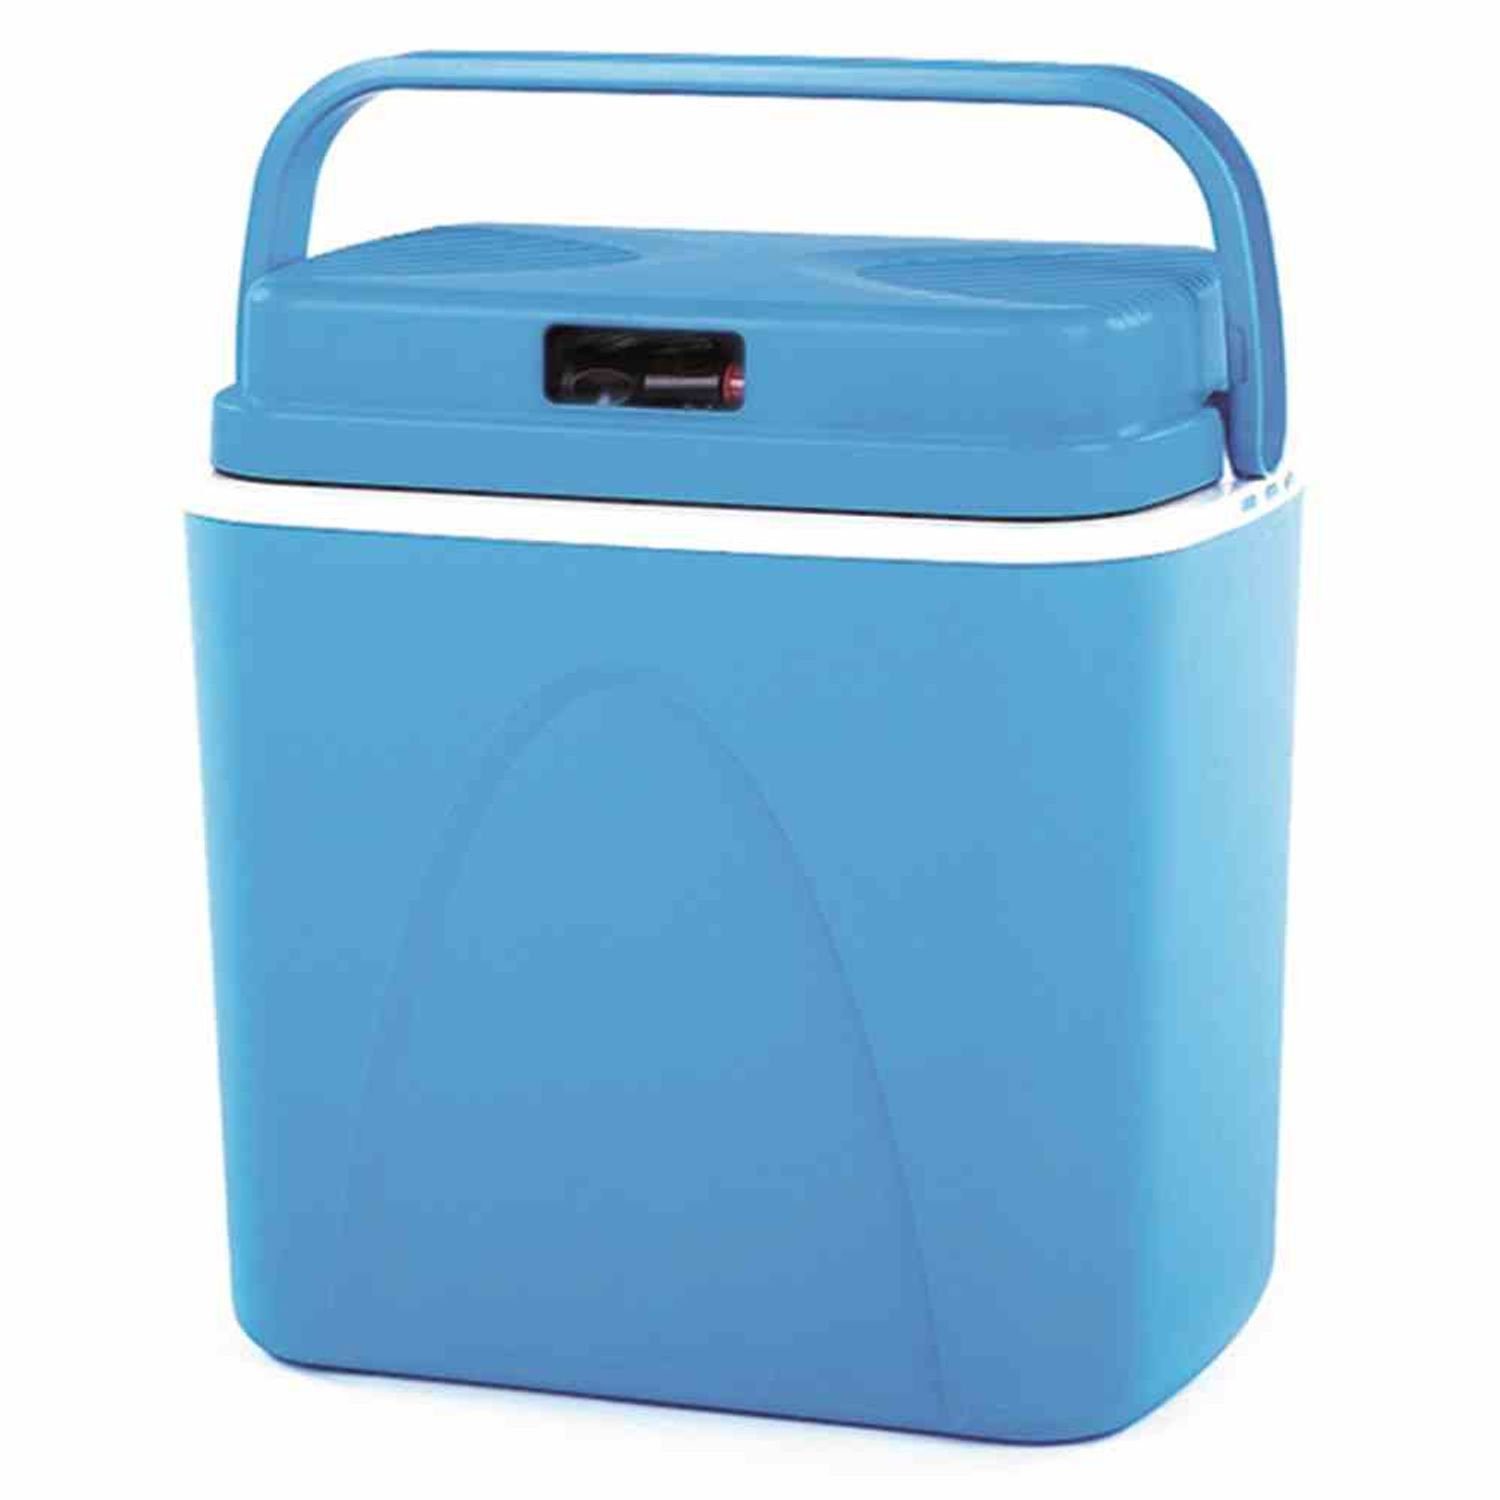 ConnaBride Plastics Limited Kühlbox Elektrische-Kühlbox 22 Liter, 12Volt, blau